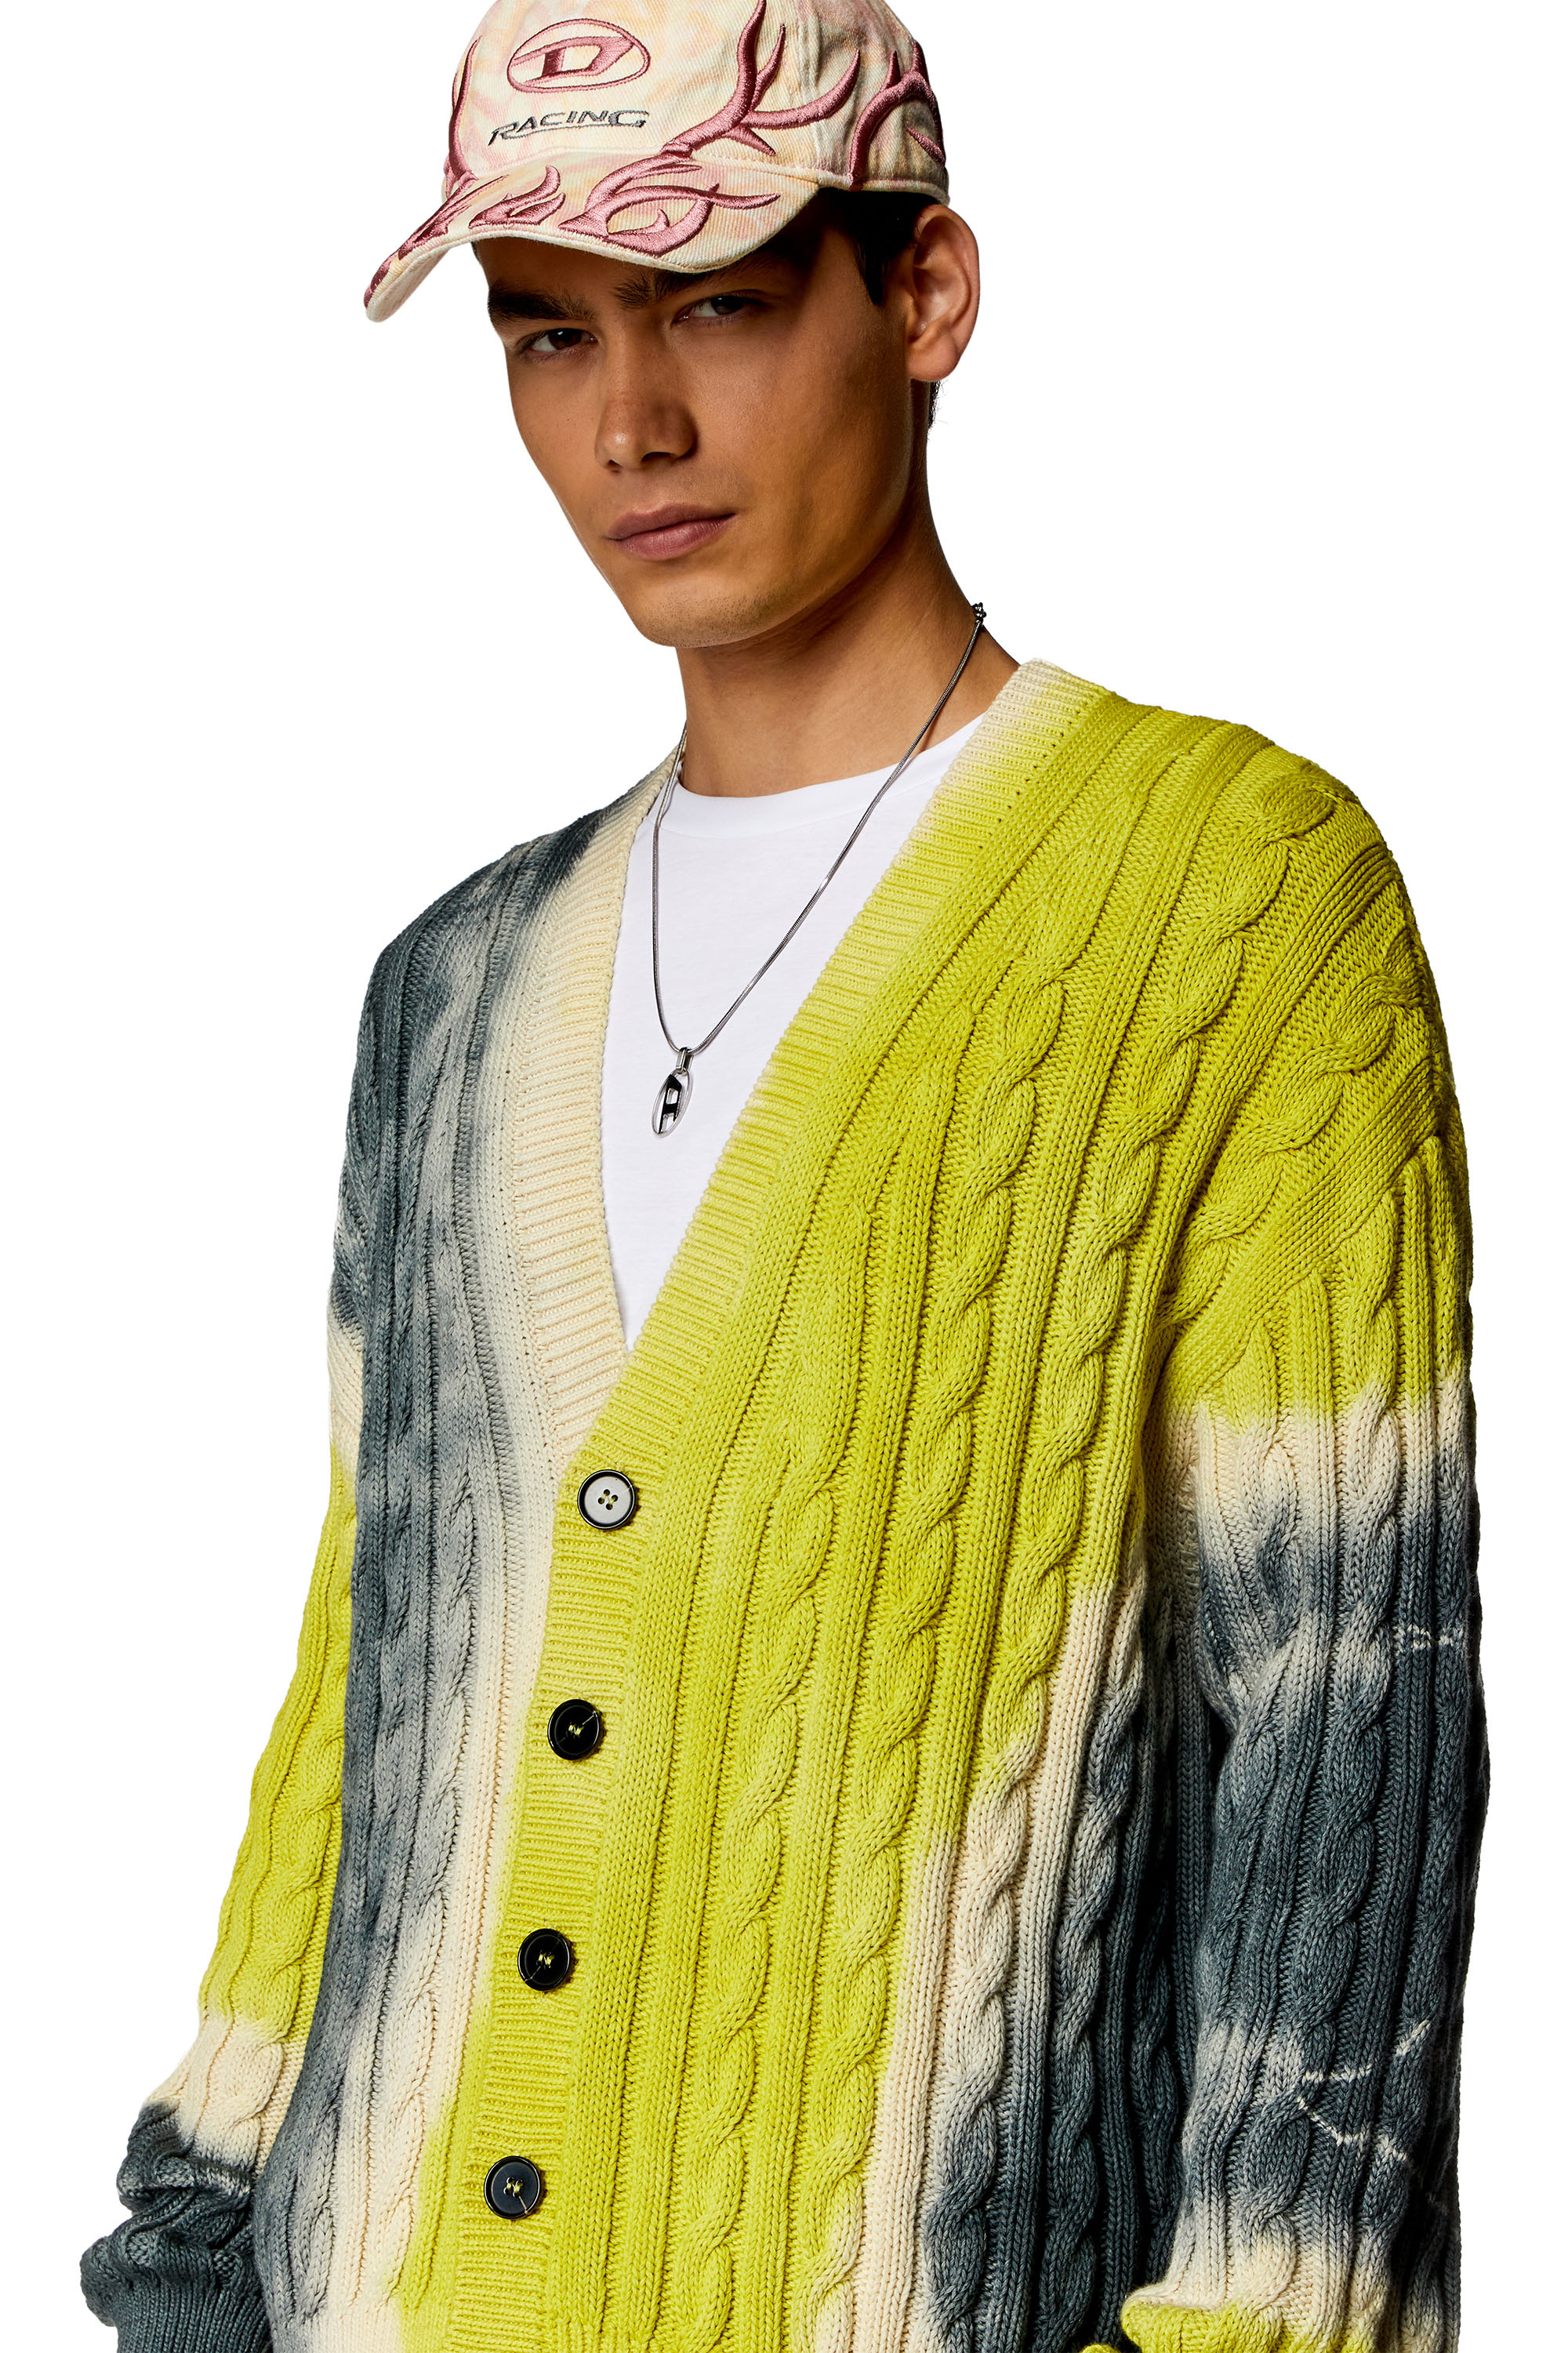 Diesel - K-JONNY, Man Tie-dye cardigan in cable-knit cotton in Multicolor - Image 5